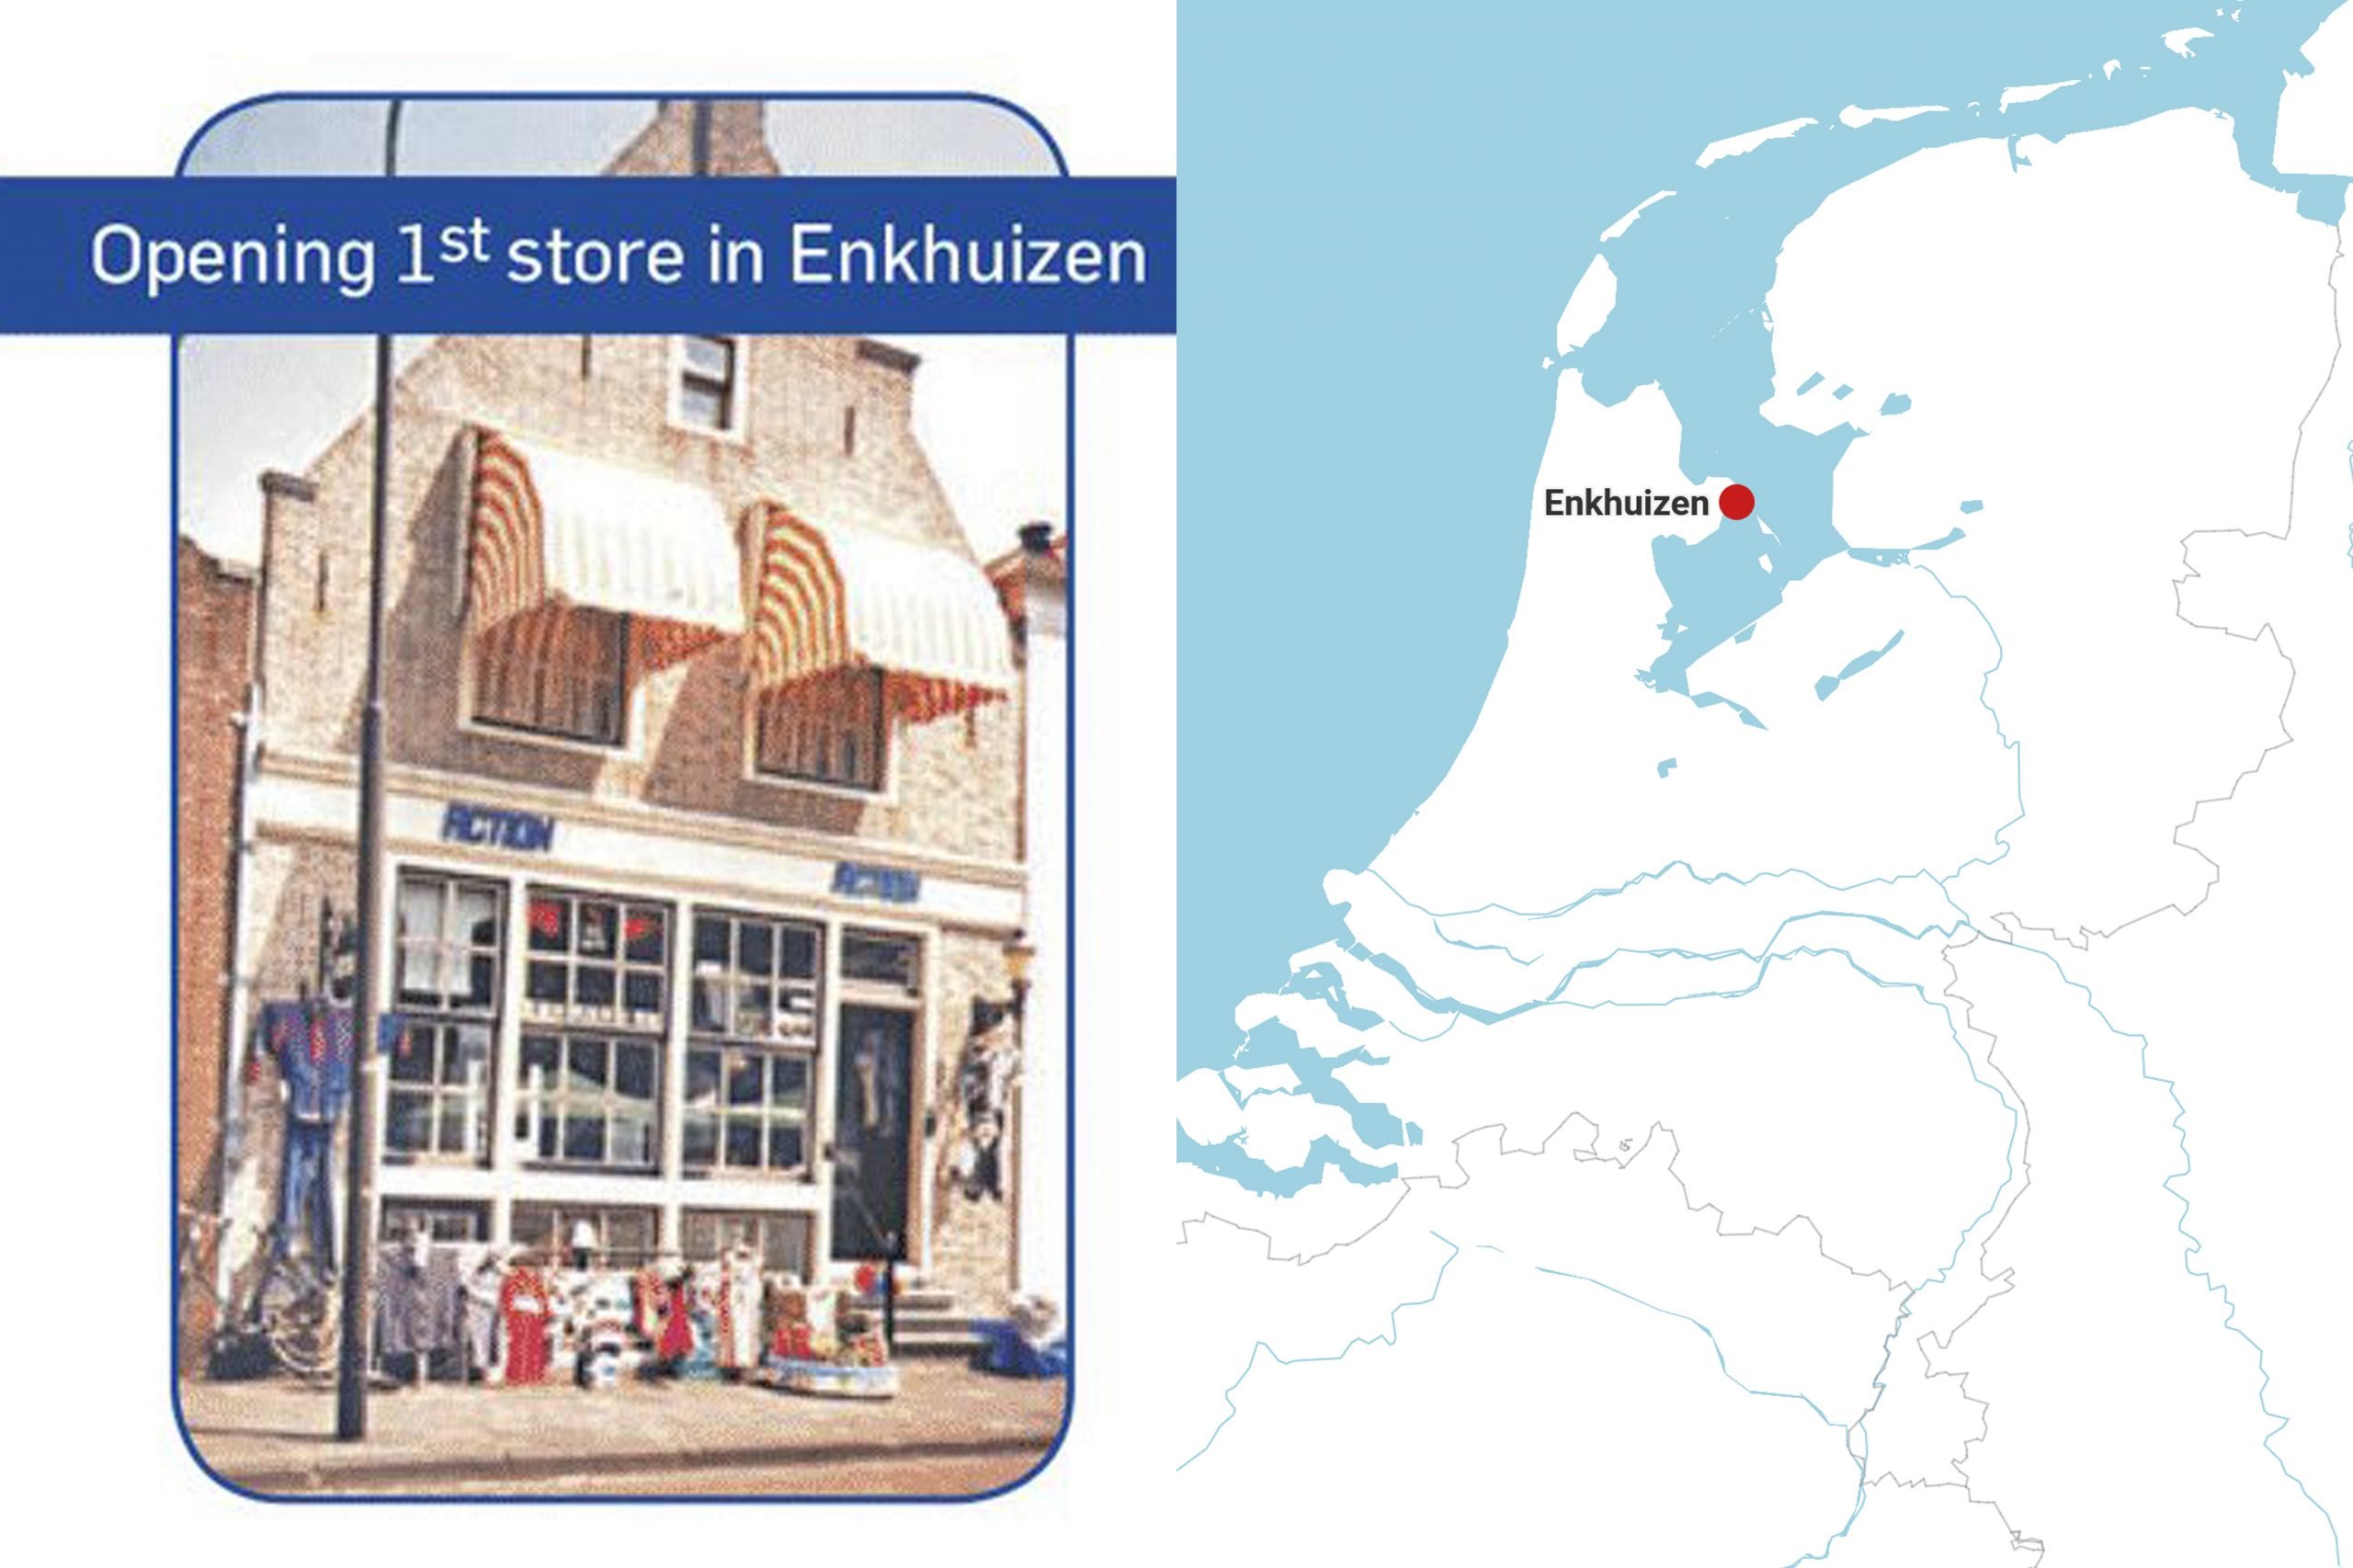 De eerste winkel van Action in Enkhuizen. Foto: Action